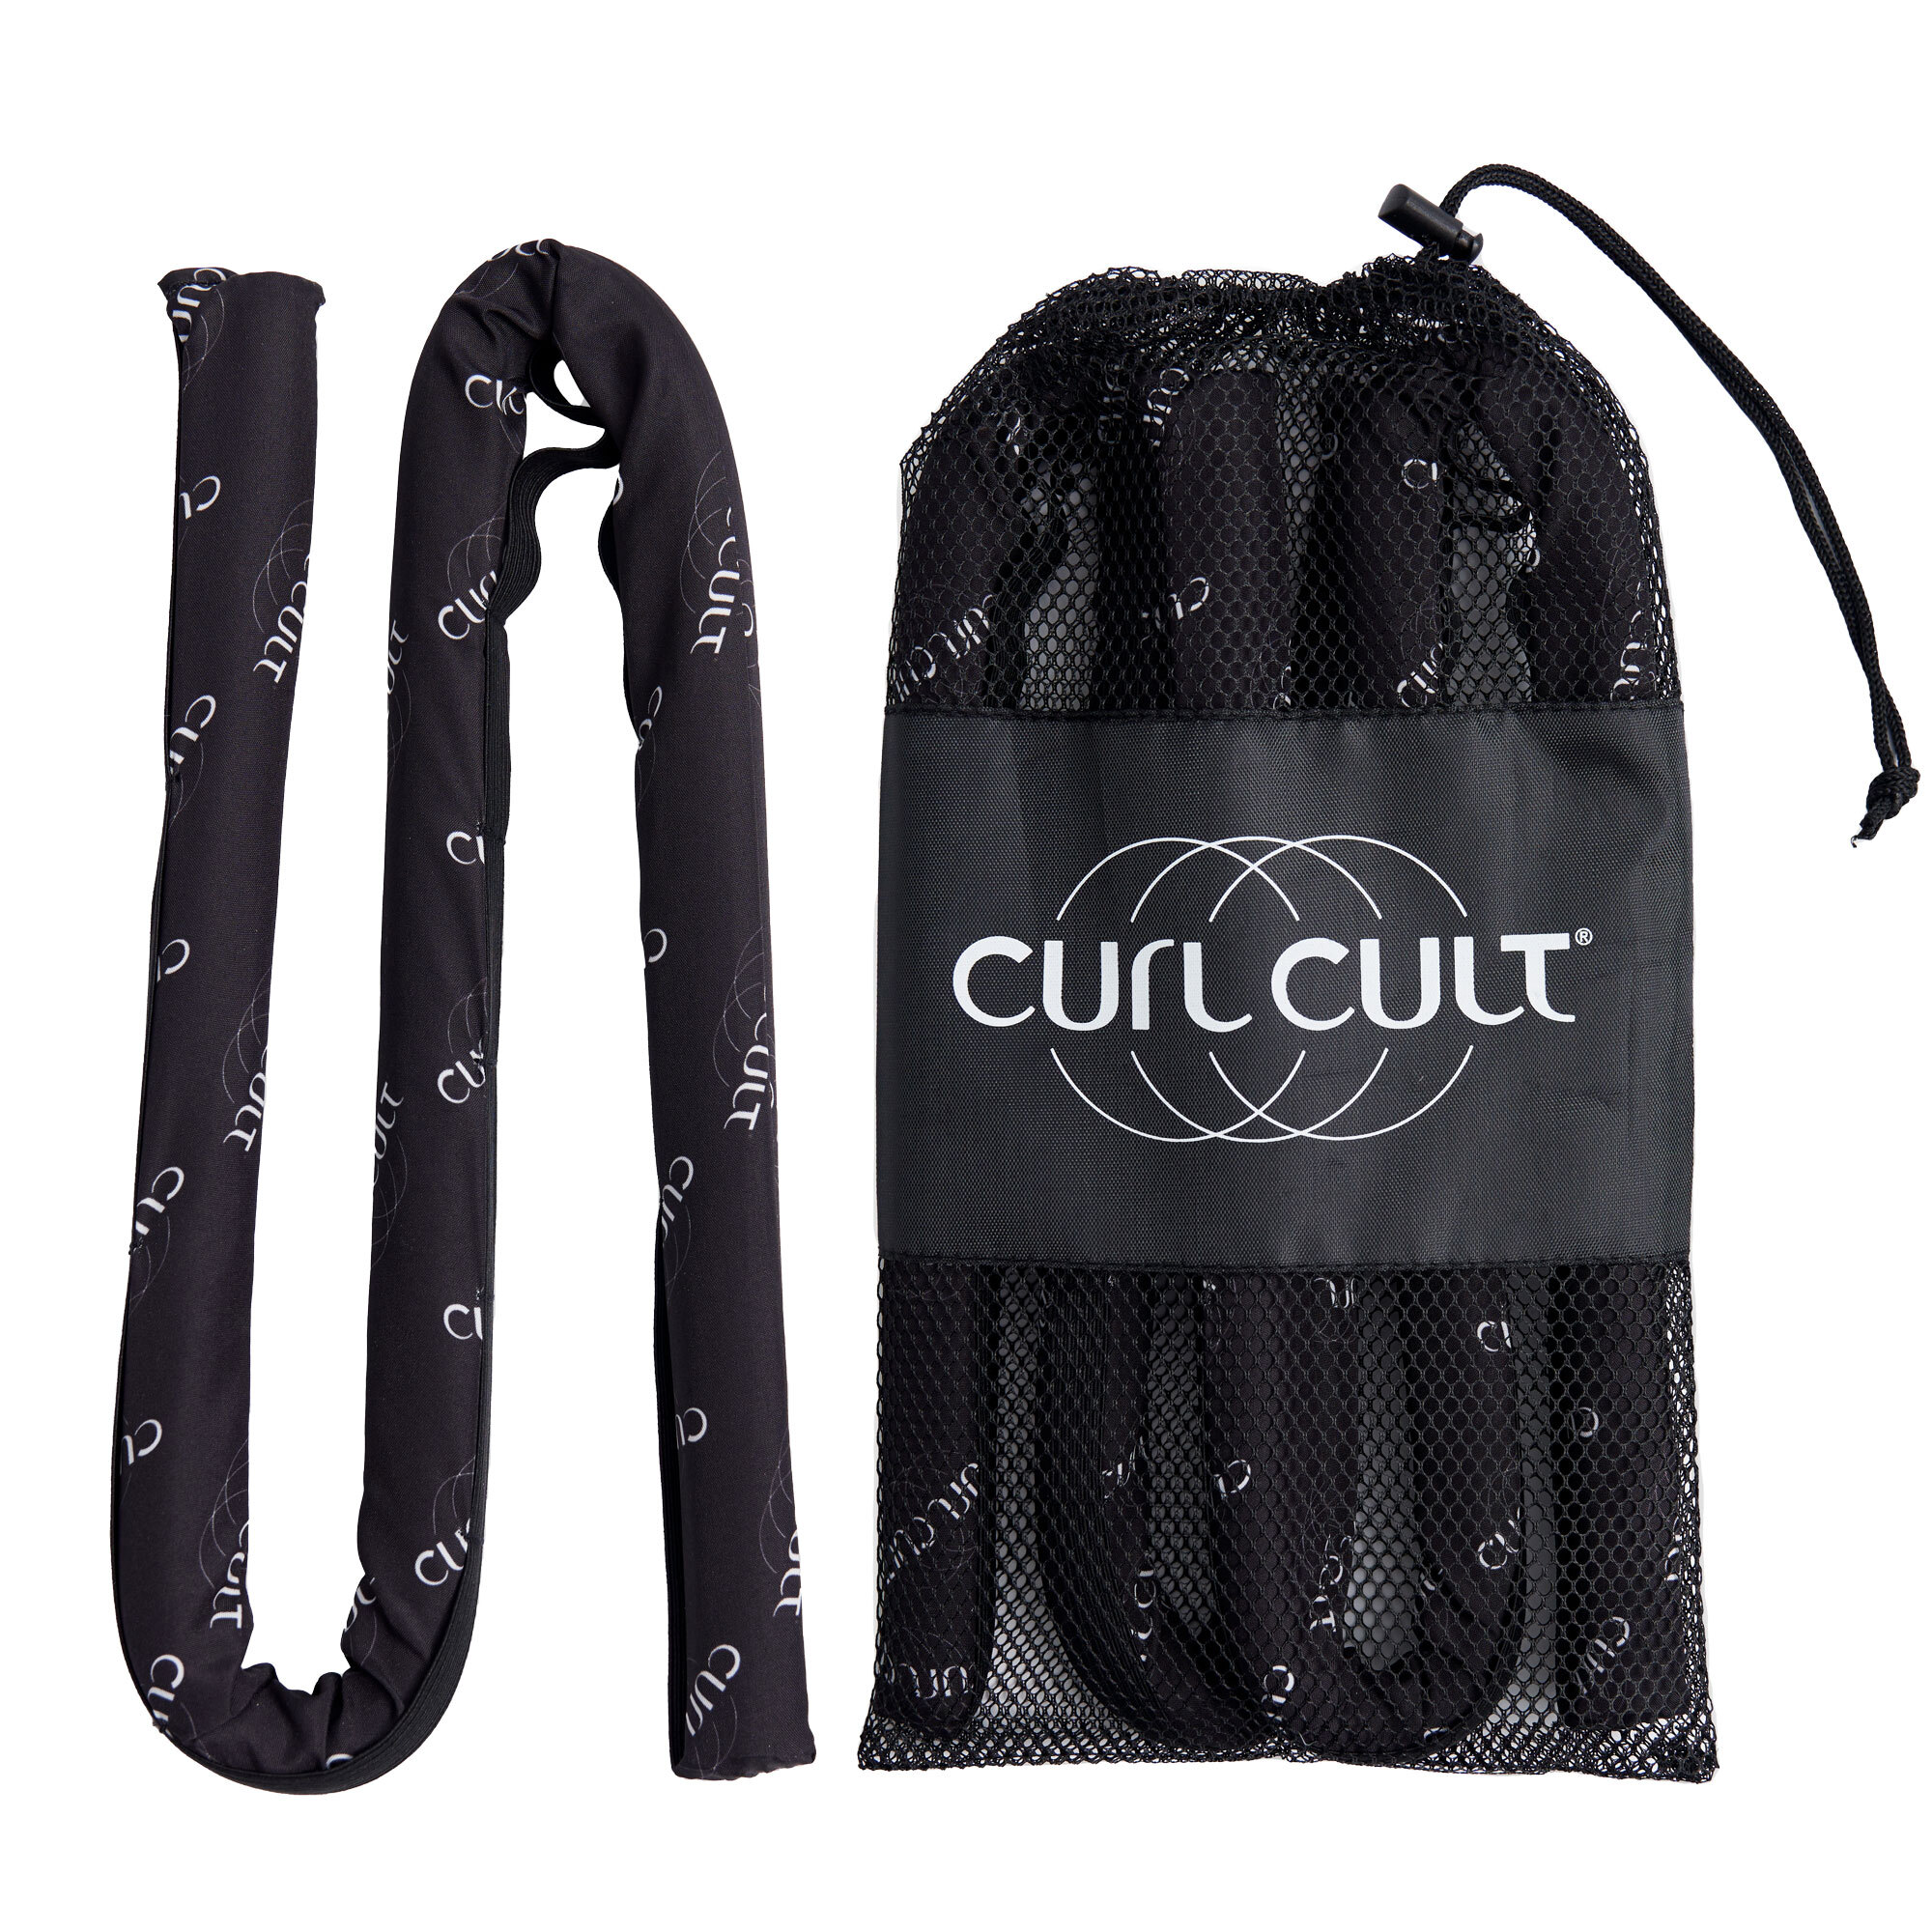 Curl Cult CURL CULT TOOL KIT